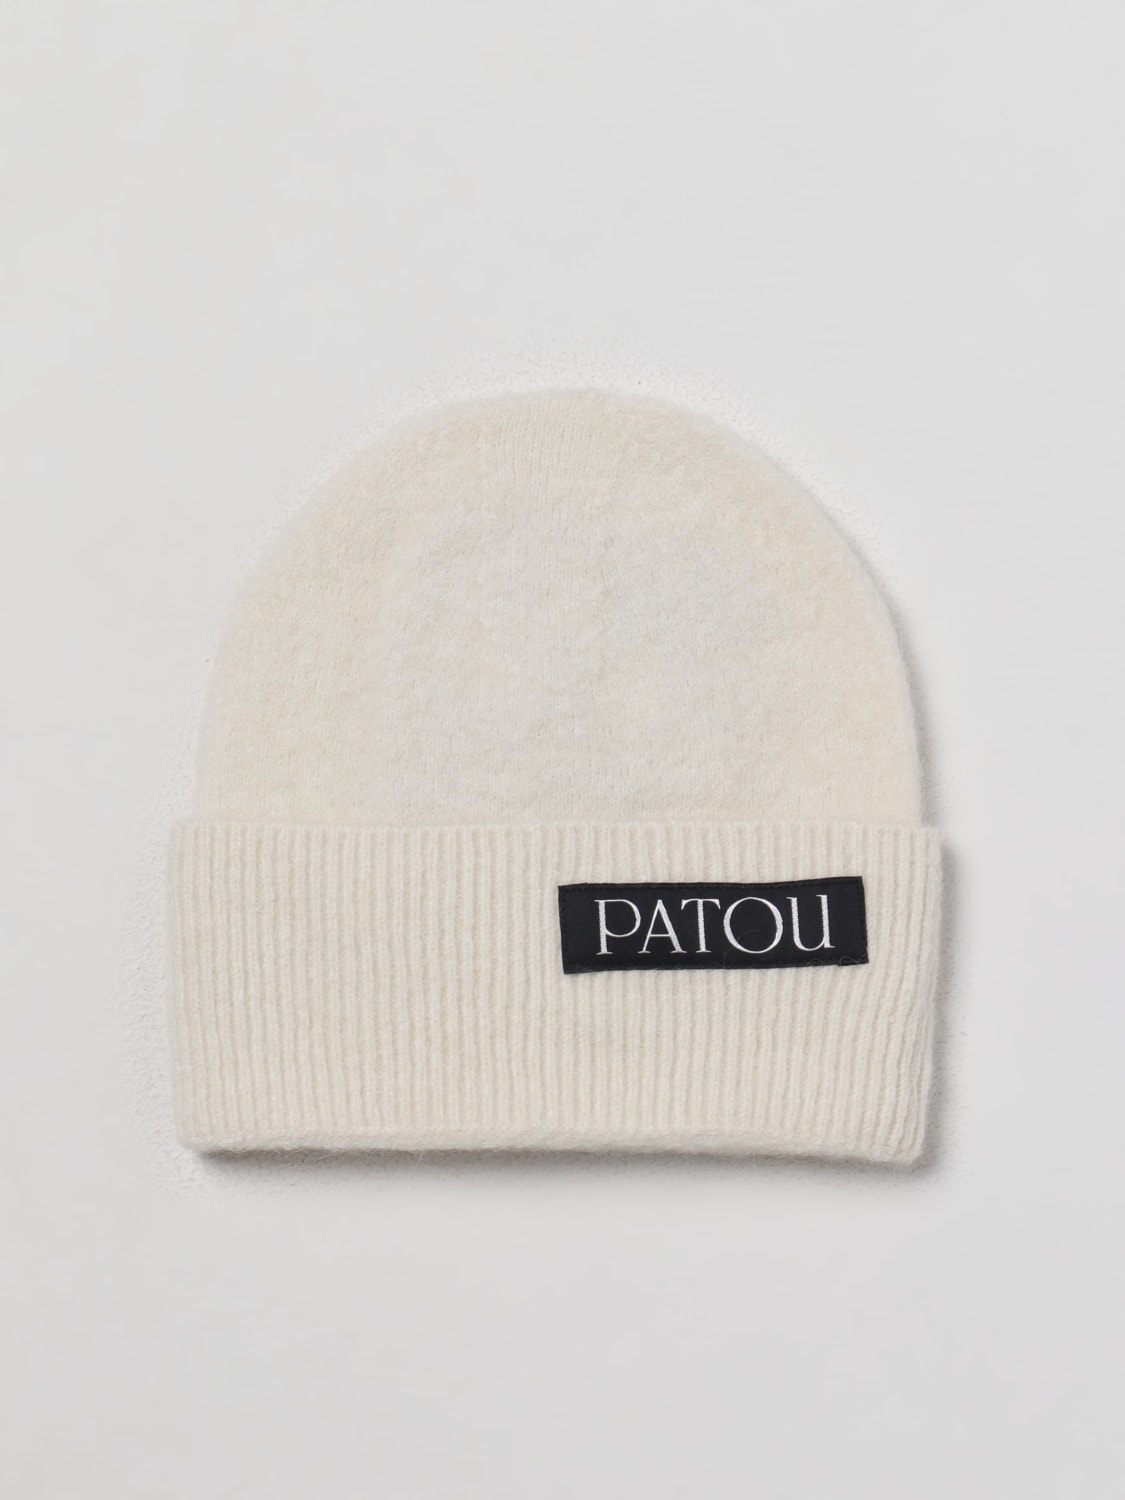 新品 PATOU(パトゥ) アルパカブレンドビーニー ニット帽 ホワイト-ポルトガル製